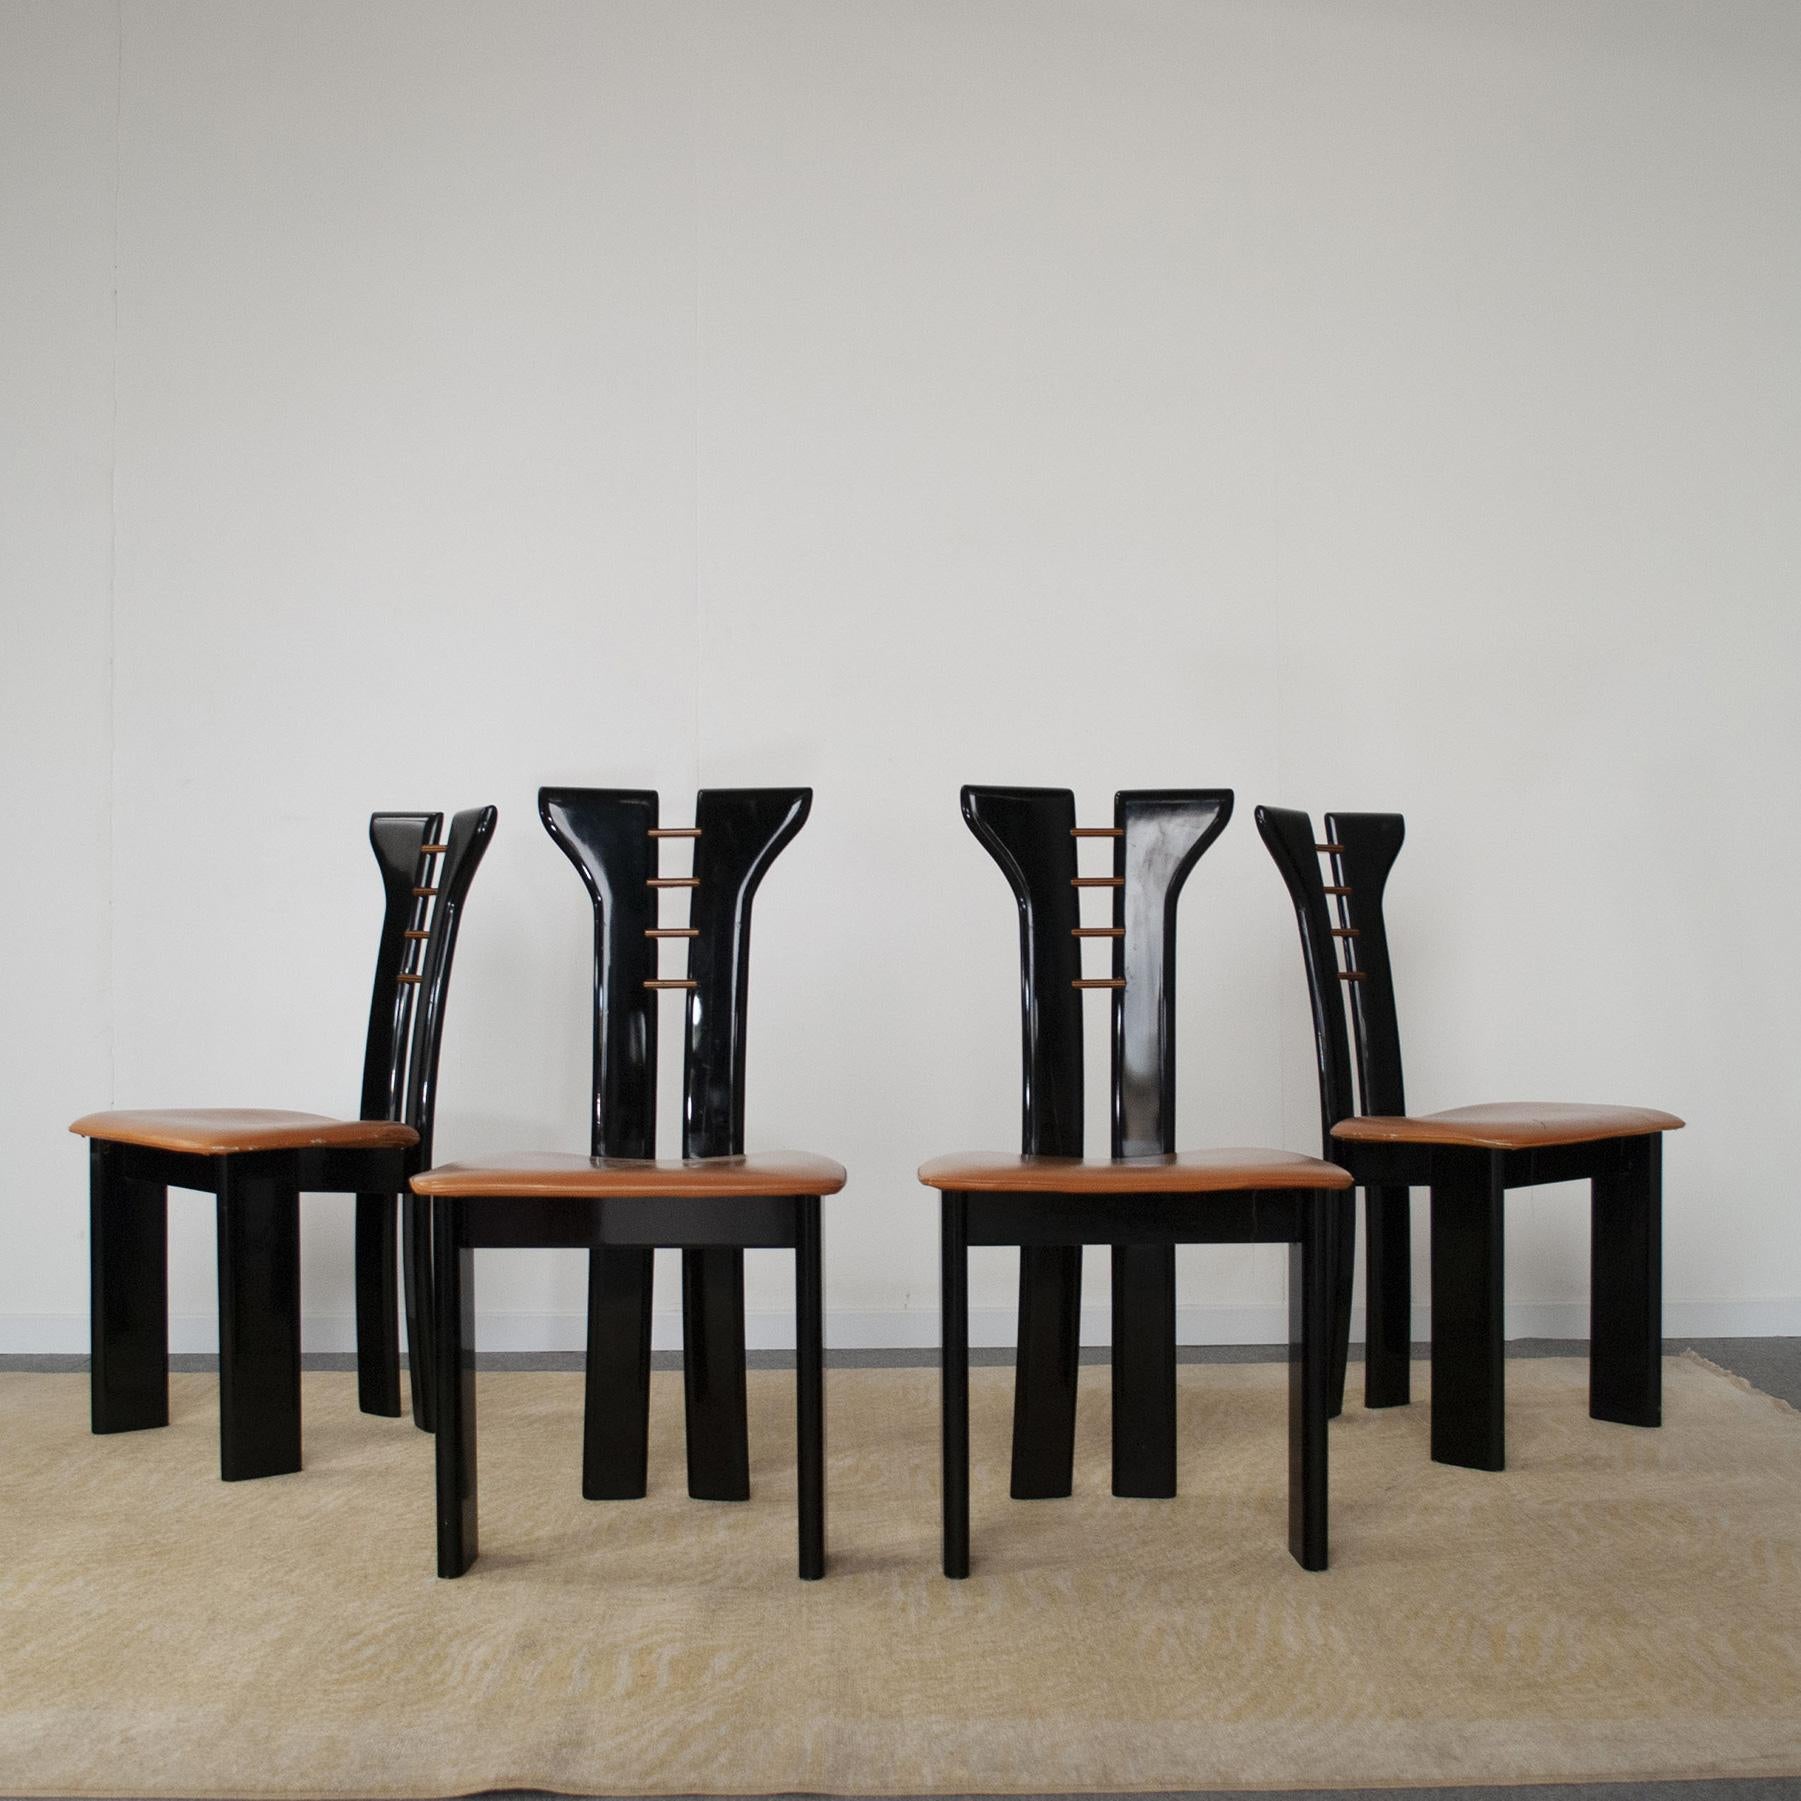 Set für vier Stühle des französischen Designers Pierre Cardin aus schwarz lackiertem Holz mit cognacfarbenem Ledersitz Französische Produktion Ende der 70er Jahre.
Die Sitze haben Risse, sie können durch das gleiche Leder ersetzt werden.